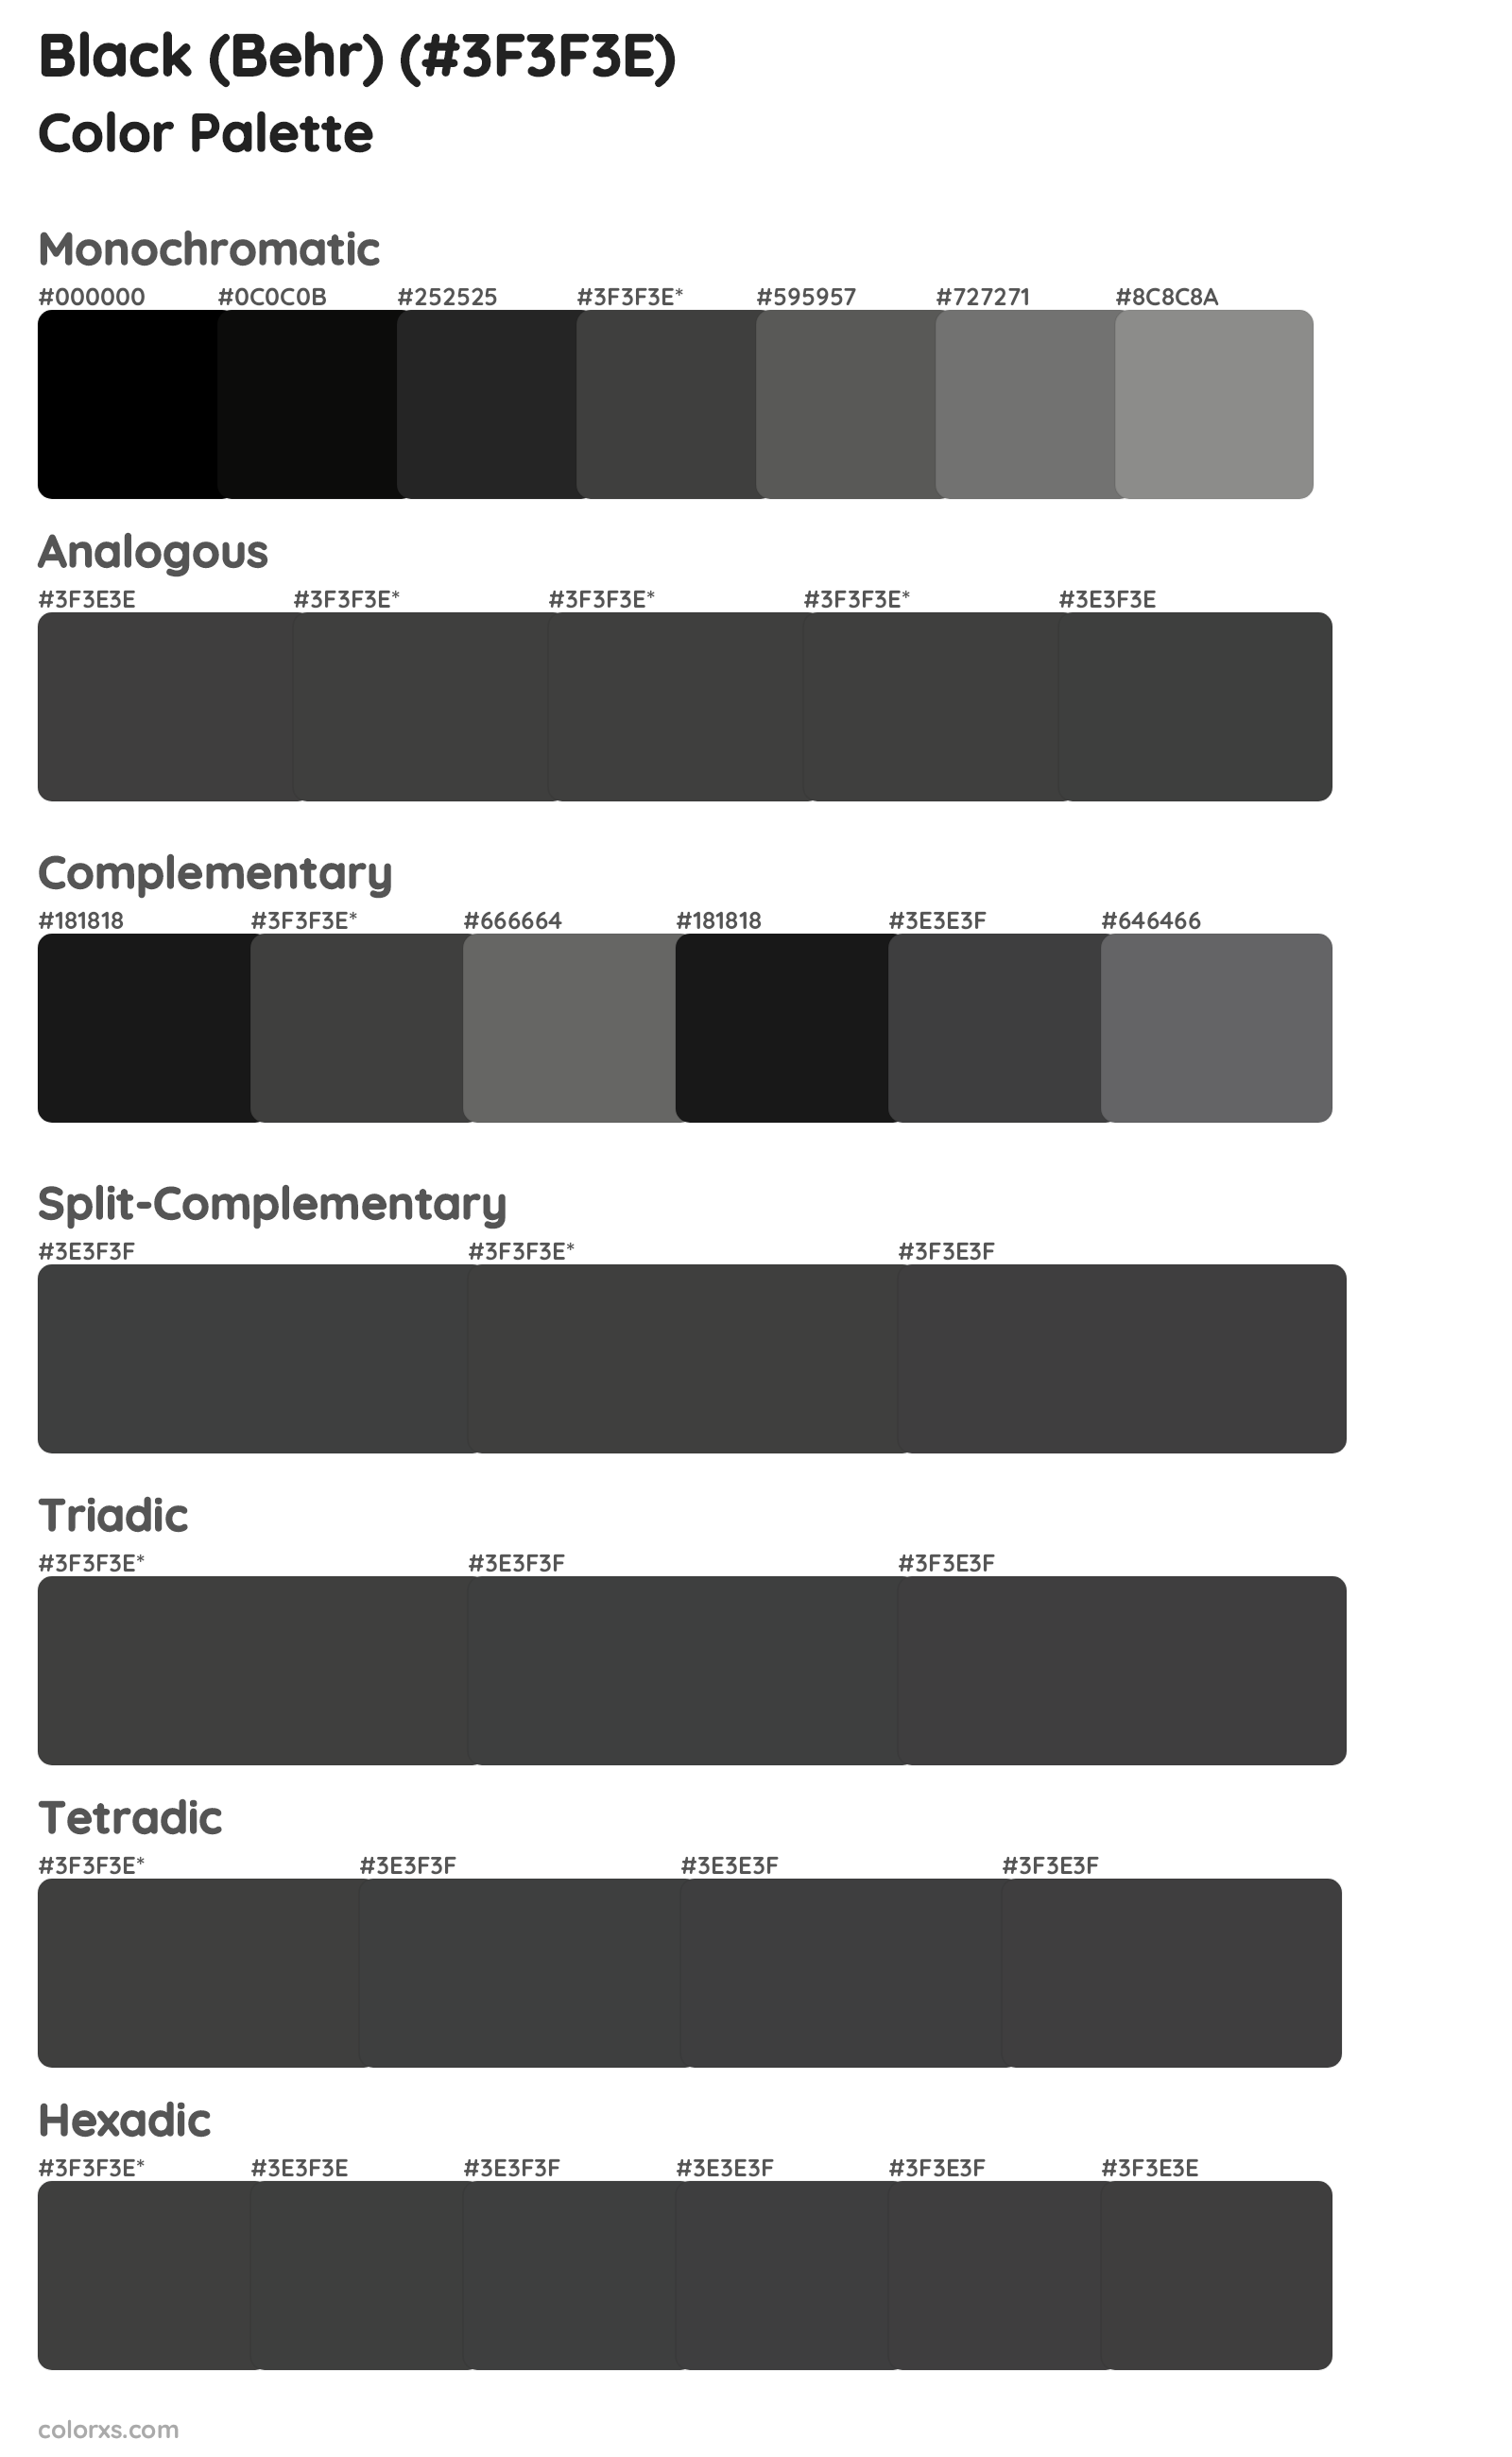 Black (Behr) Color Scheme Palettes